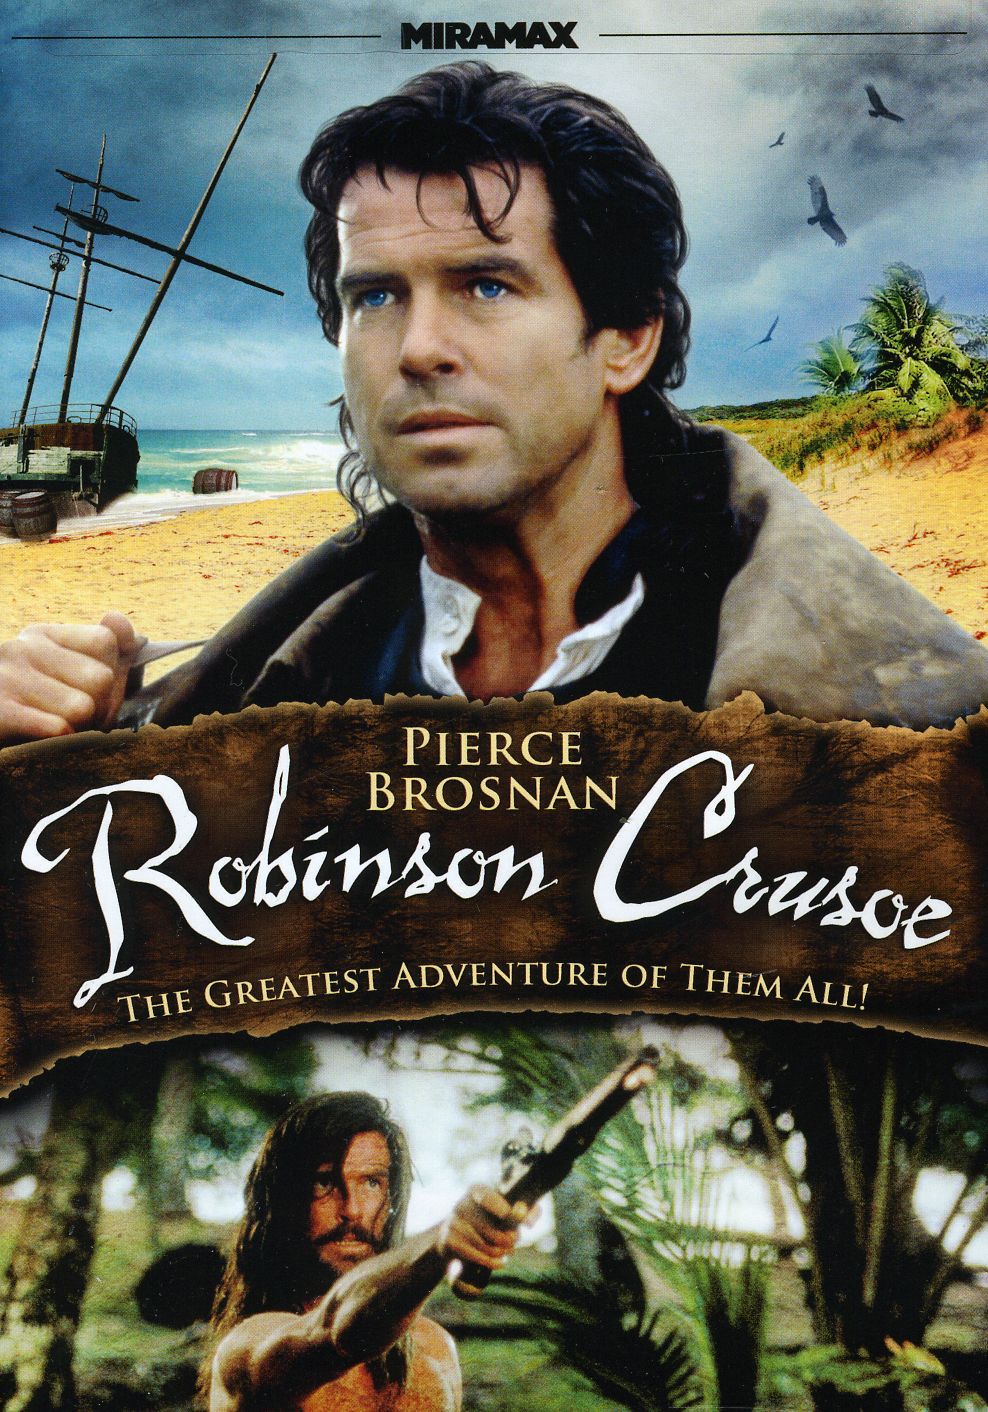 ดูหนังออนไลน์ฟรี Robinson Crusoe (1997) โรบินสัน ครูโซ ผจญภัยแดนพิสดาร